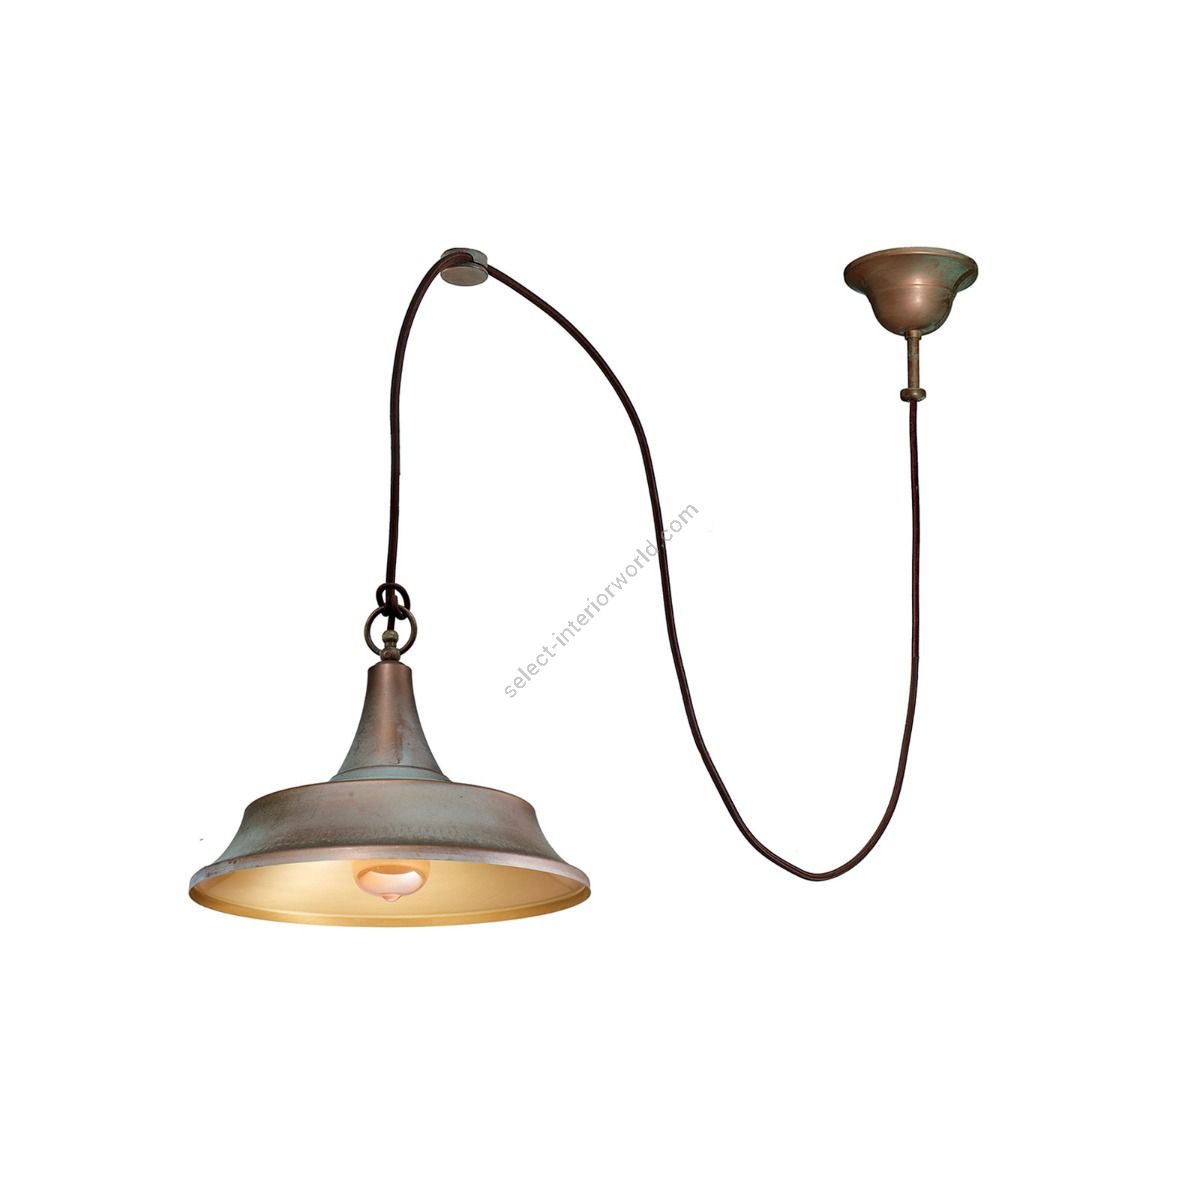 Moretti Luce / Light Indoor Pendant Lamp / Atelier 3120R